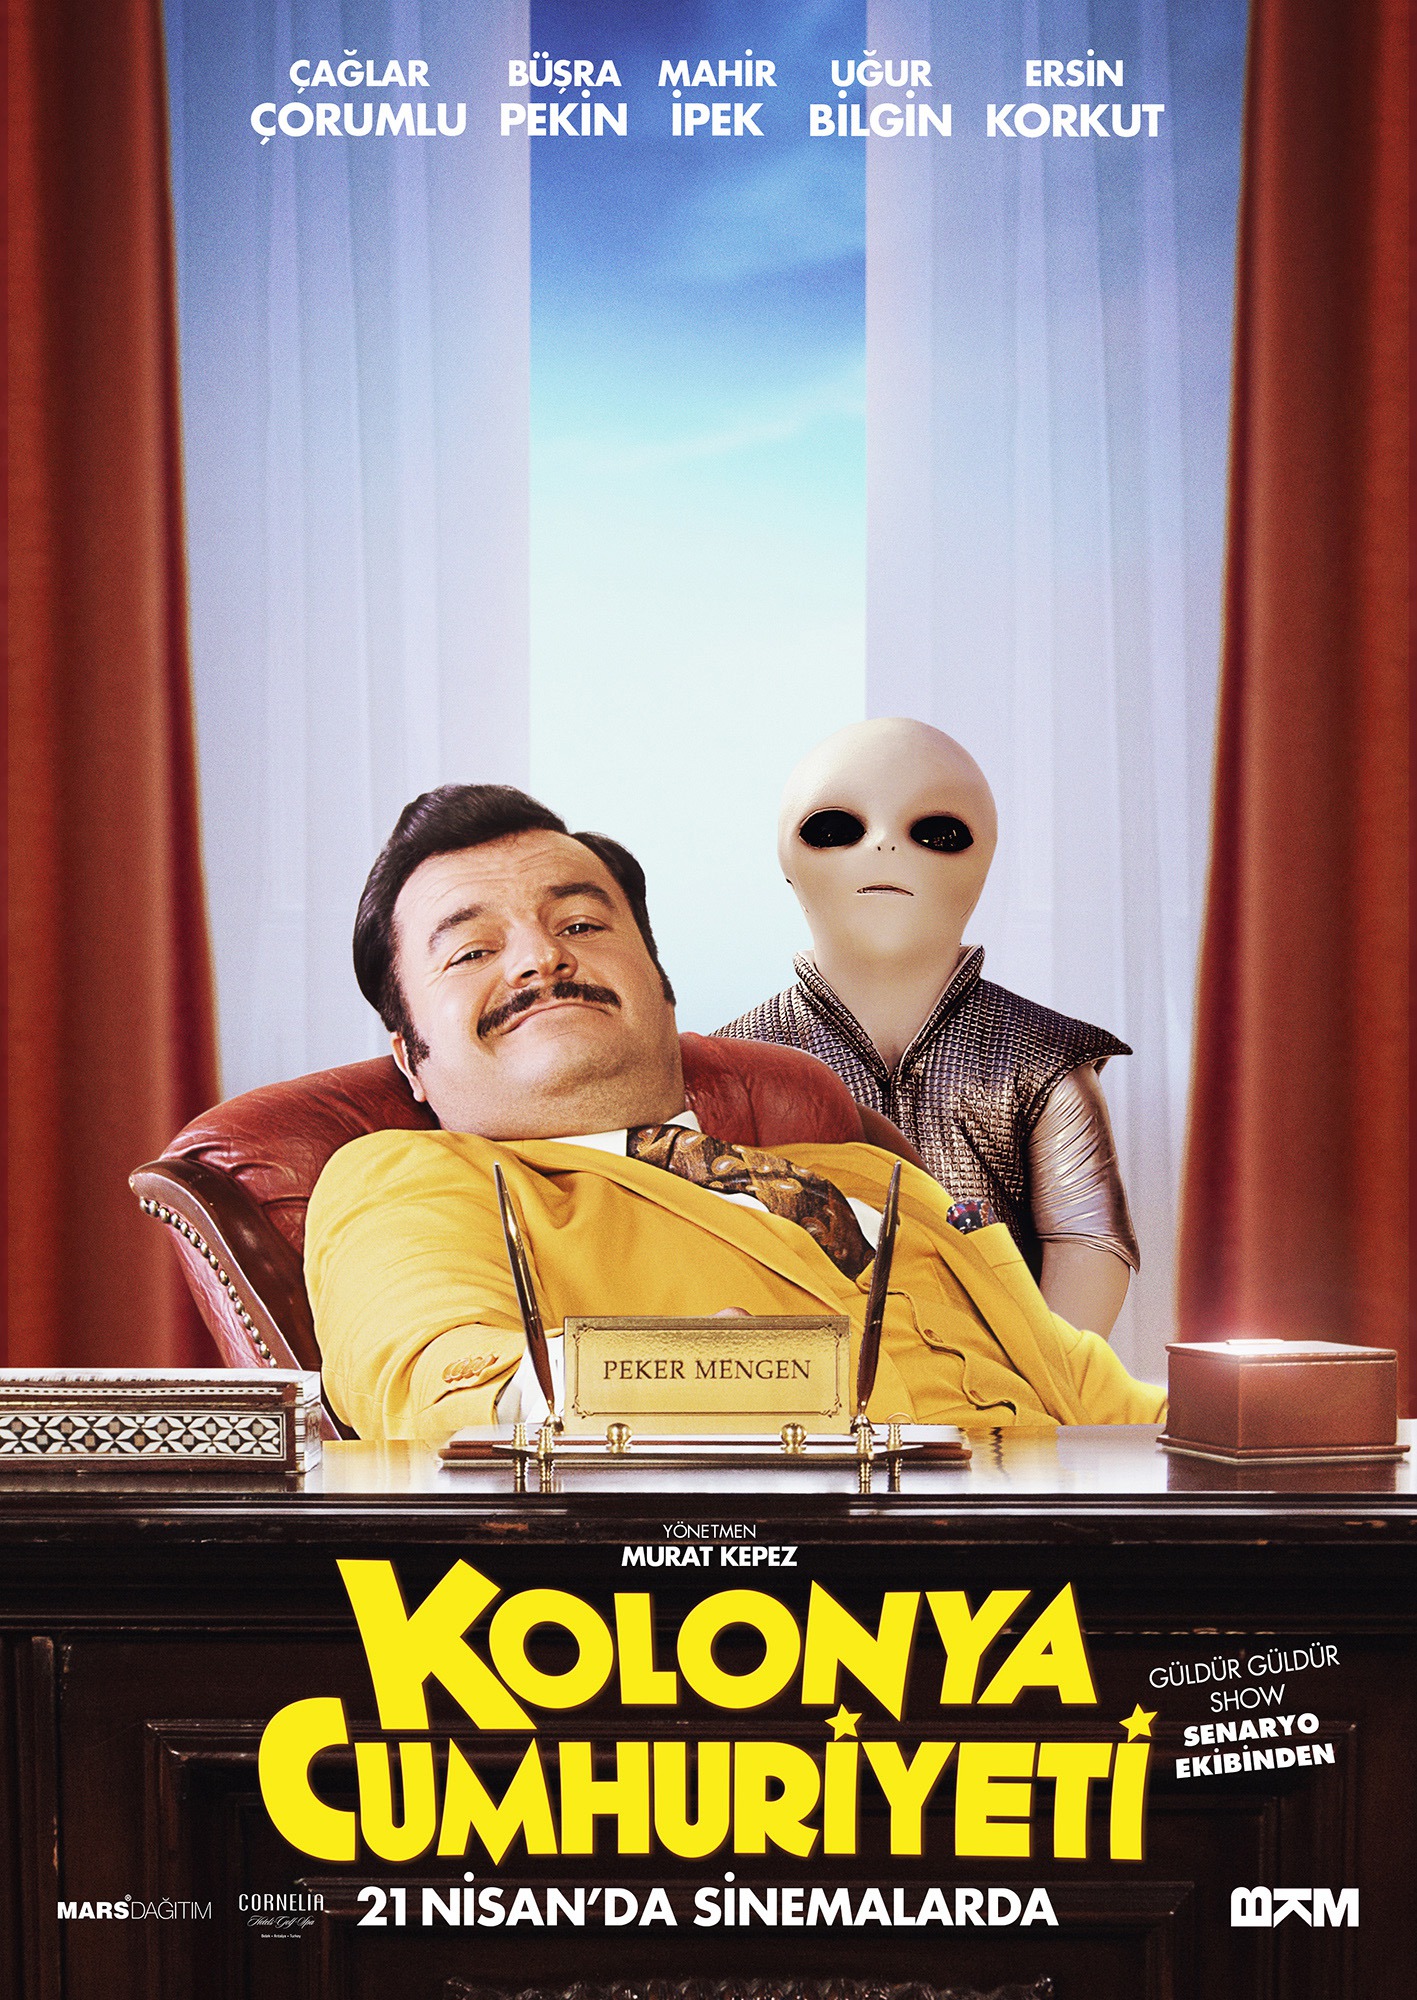 Mega Sized Movie Poster Image for Kolonya Cumhuriyeti (#7 of 7)